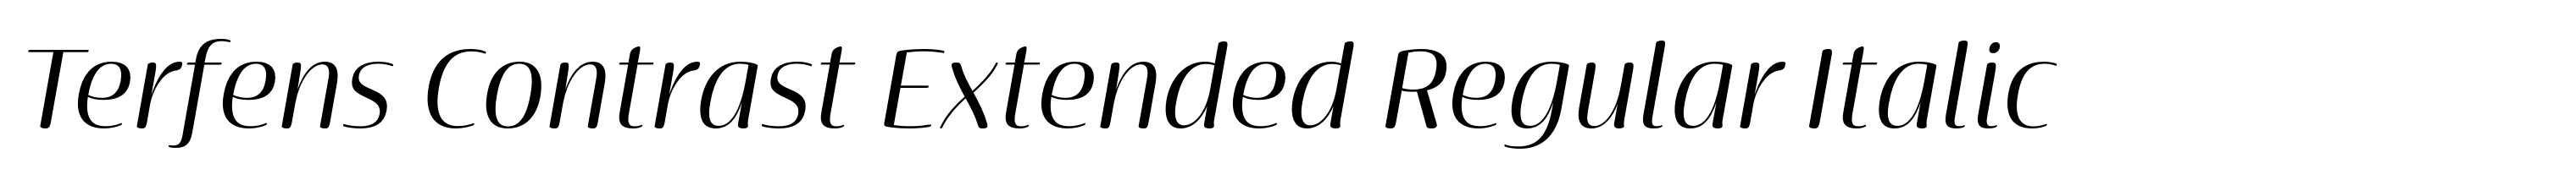 Terfens Contrast Extended Regular Italic